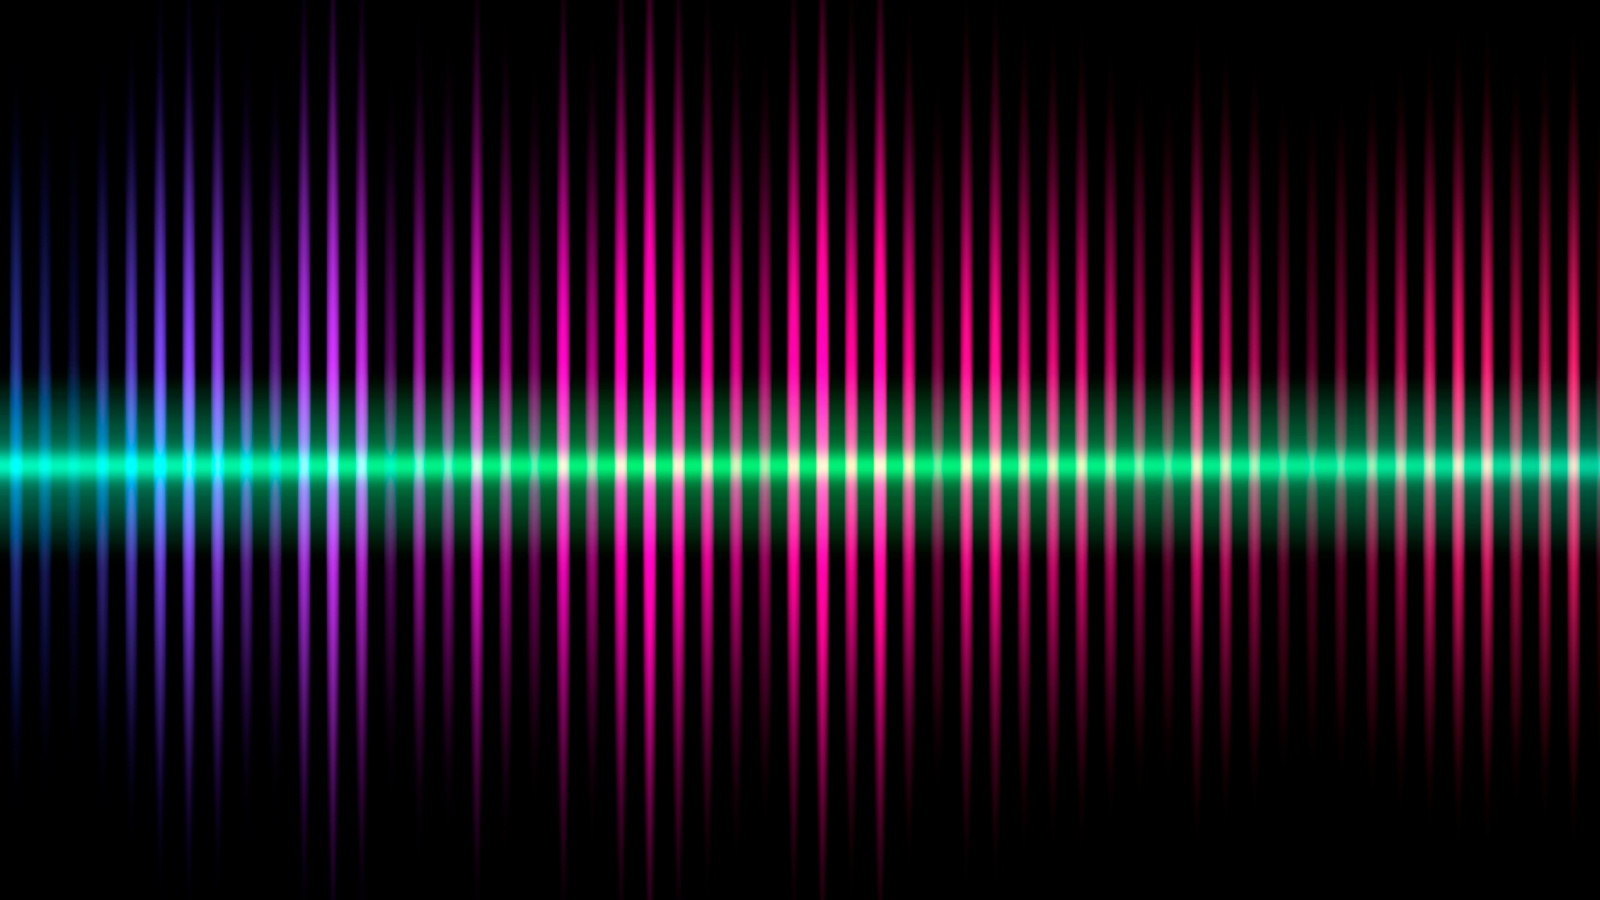 Fones de ouvido com cancelamento de ruído podem usar IA para “travar” alguém quando ele fala e abafar todos os outros ruídos